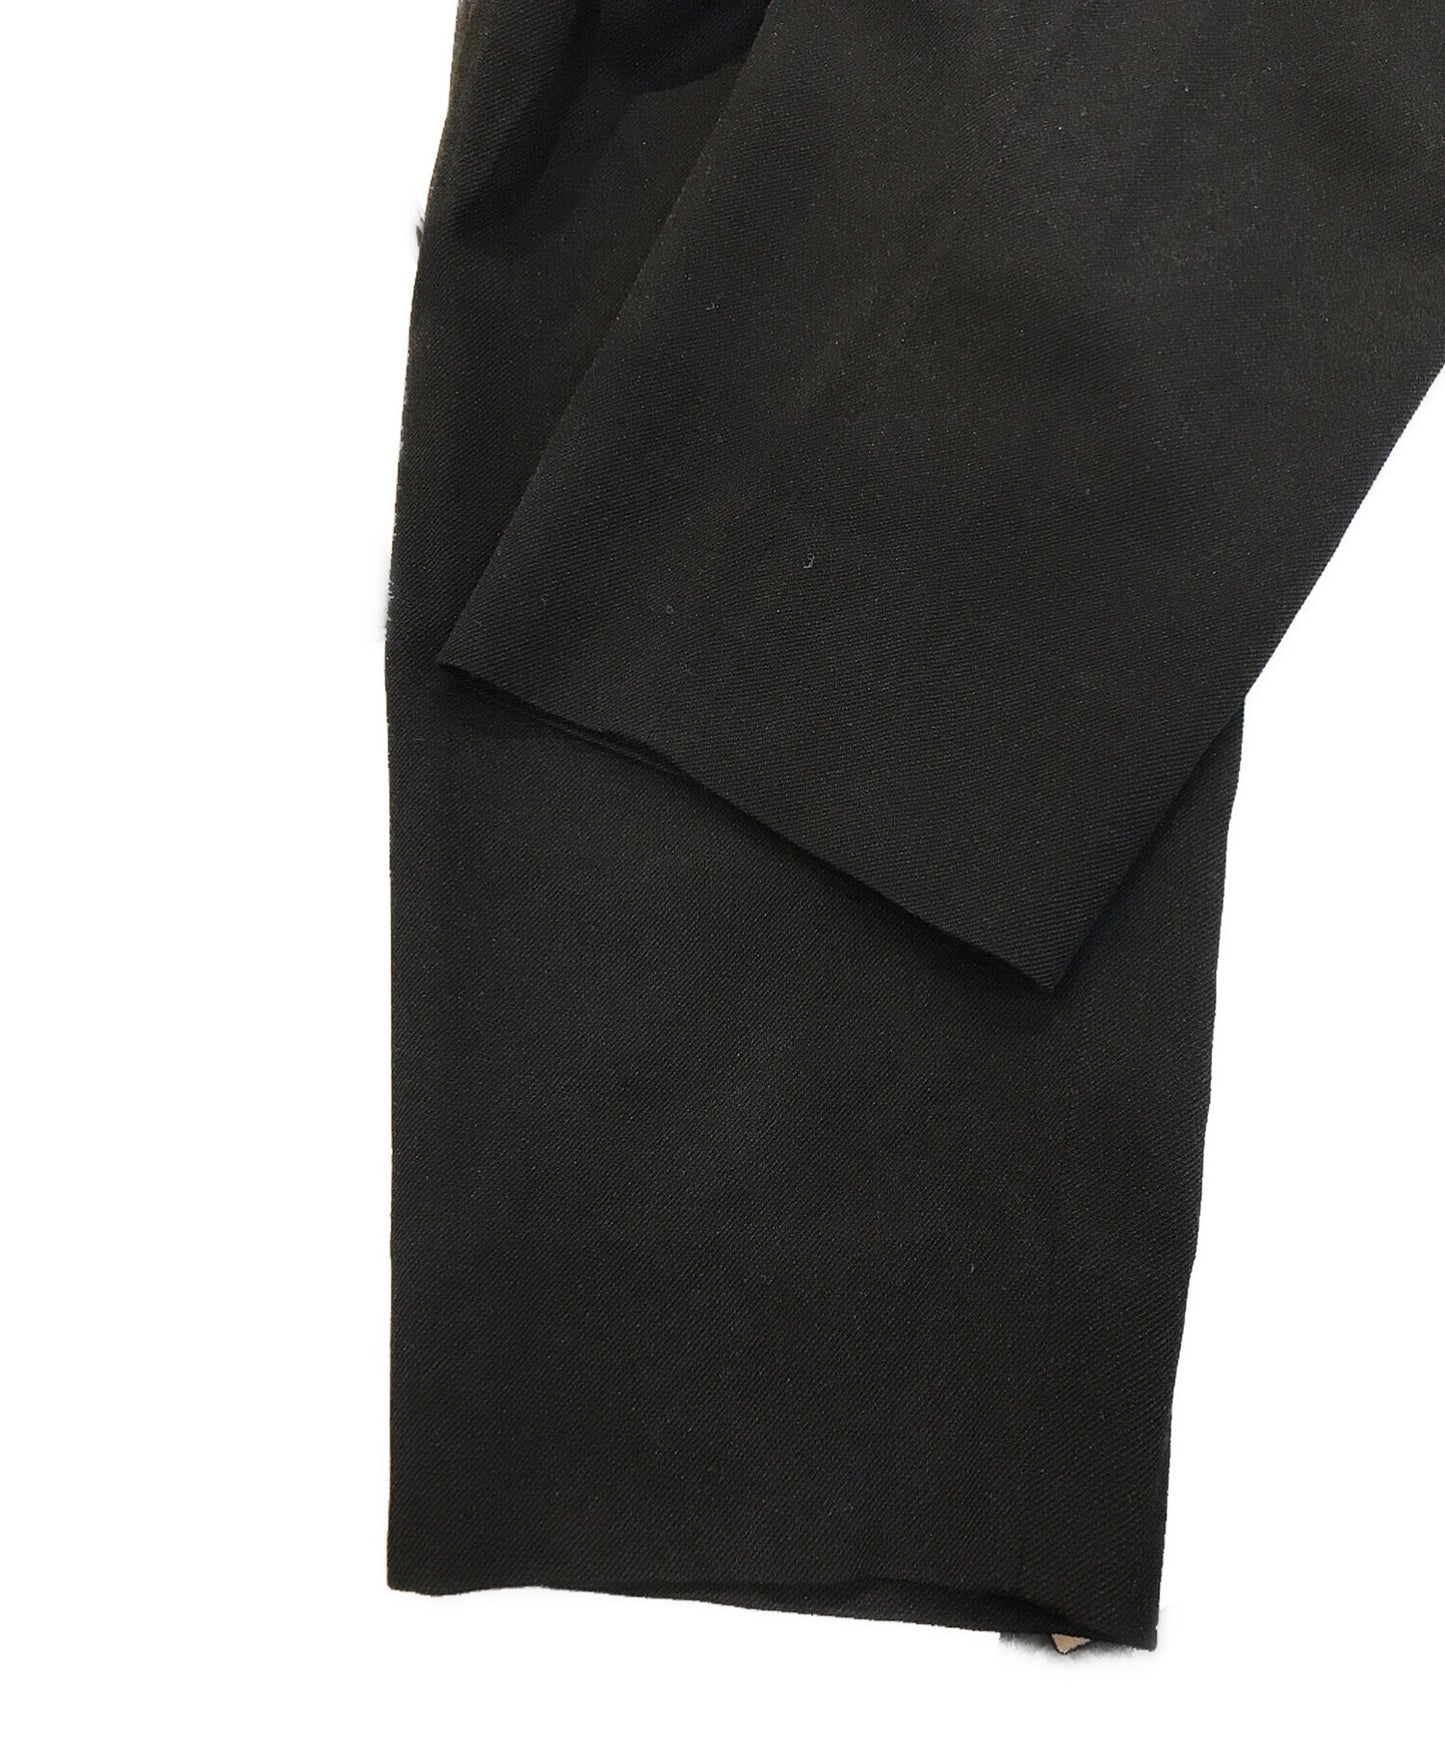 Comme des Garcons Homme Deux Polyester Pants DH-P028